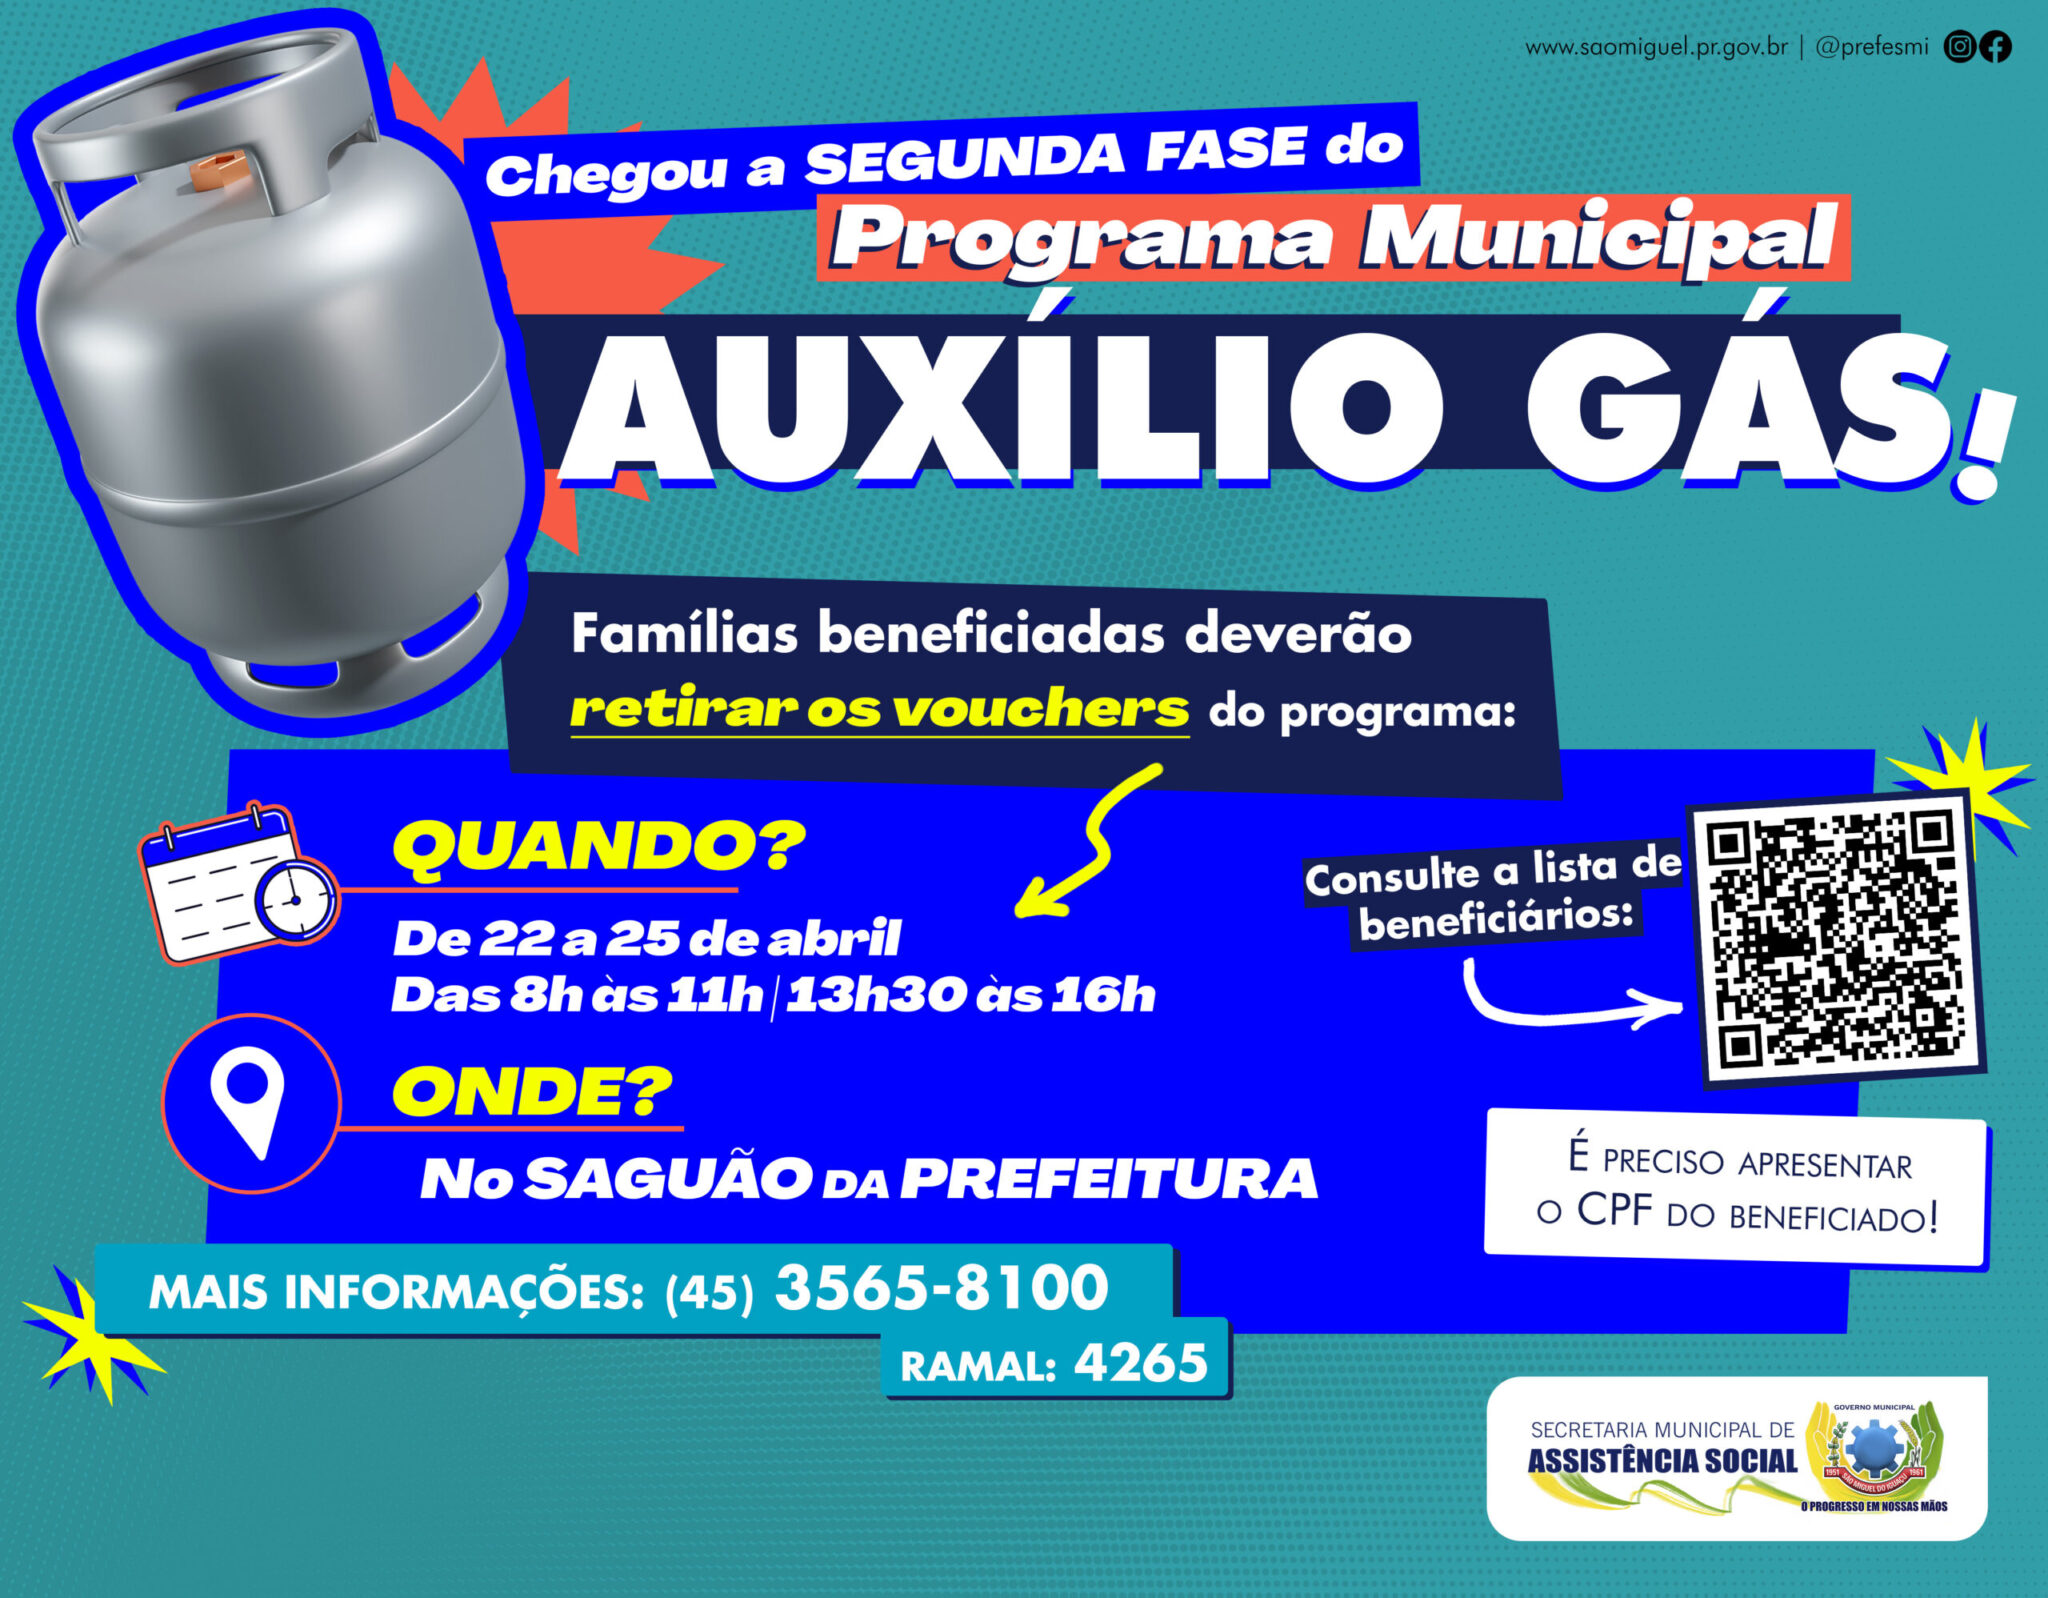 🌟 Auxílio Gás em São Miguel do Iguaçu: Segunda Fase Beneficia 1.793 Famílias! Não perca! 🔥